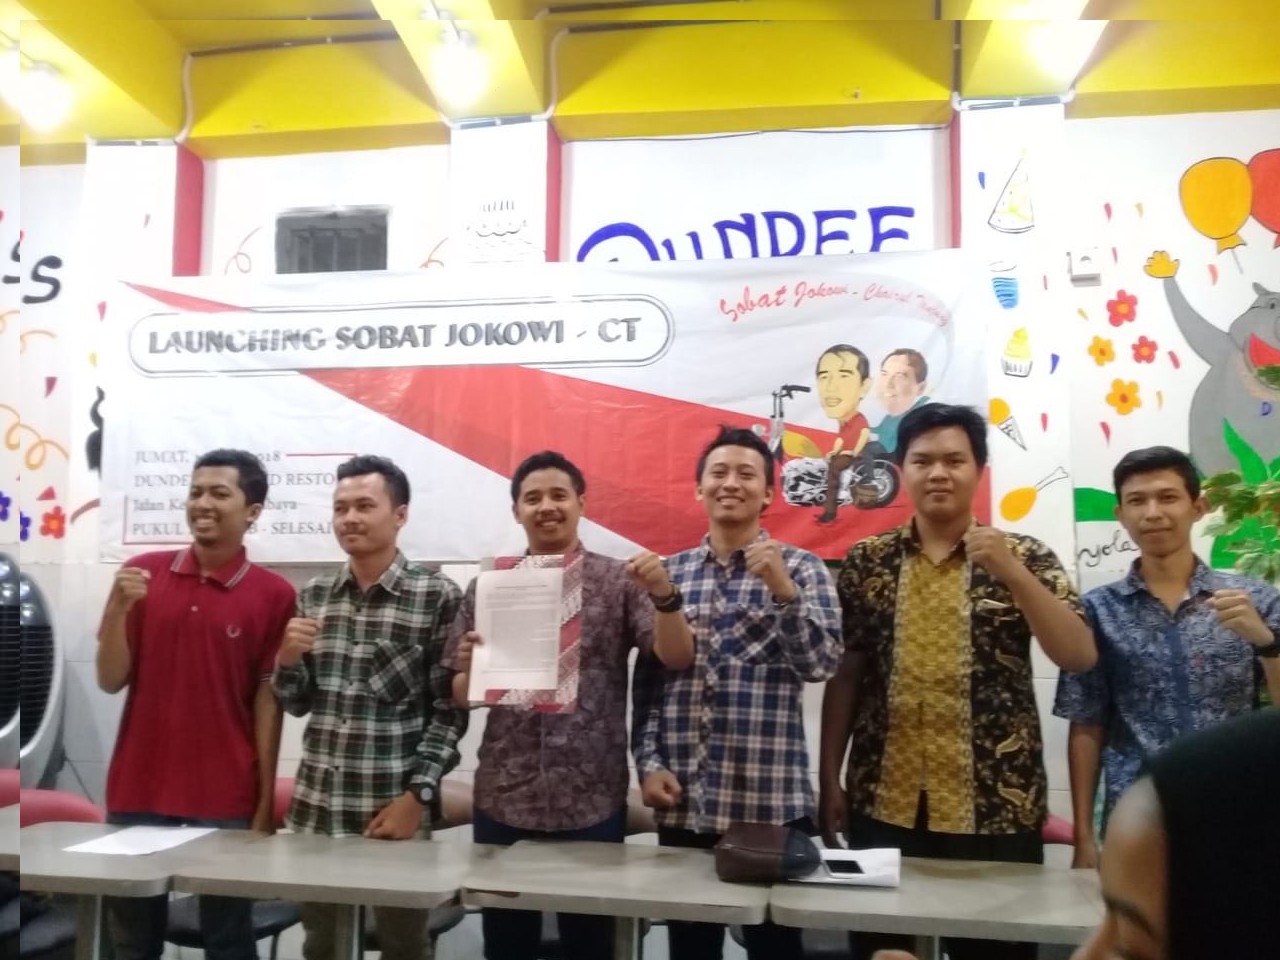 Launching Sobat Jokowi - Chairul Tanjung